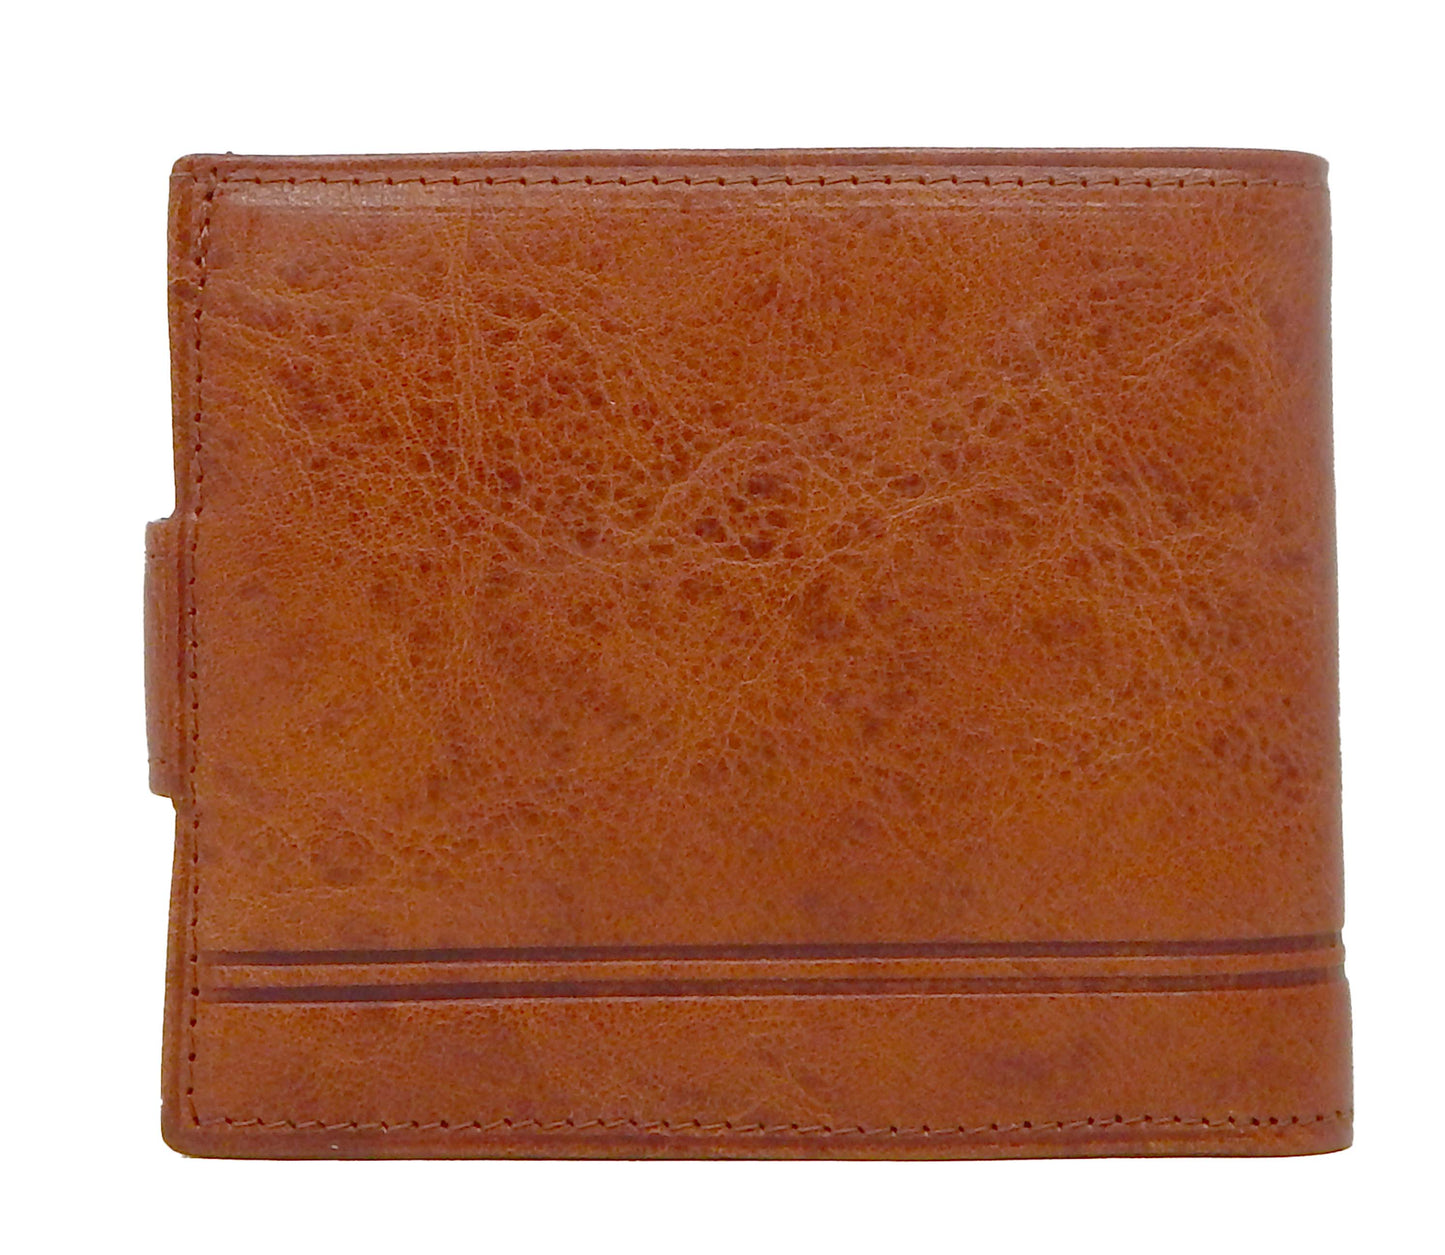 #color_ SaddleBrown | Cavalinho Men's Trifold Leather Wallet - SaddleBrown - 28610503.13.99_3